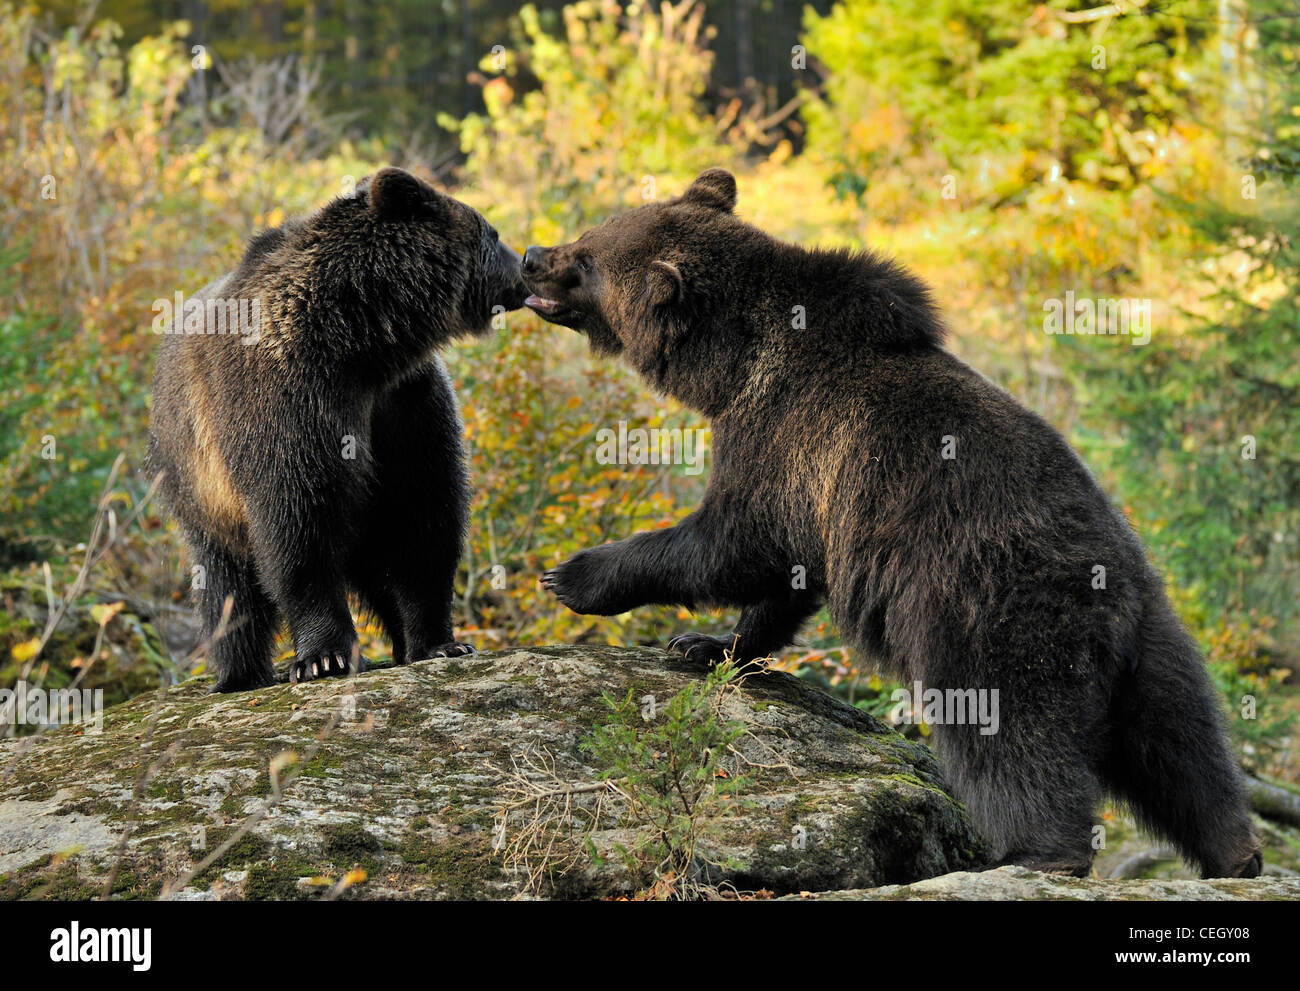 Deux d'eurasie ours brun (Ursus arctos arctos) les mineurs à jouer sur rock en forêt, forêt de Bavière, Allemagne Banque D'Images